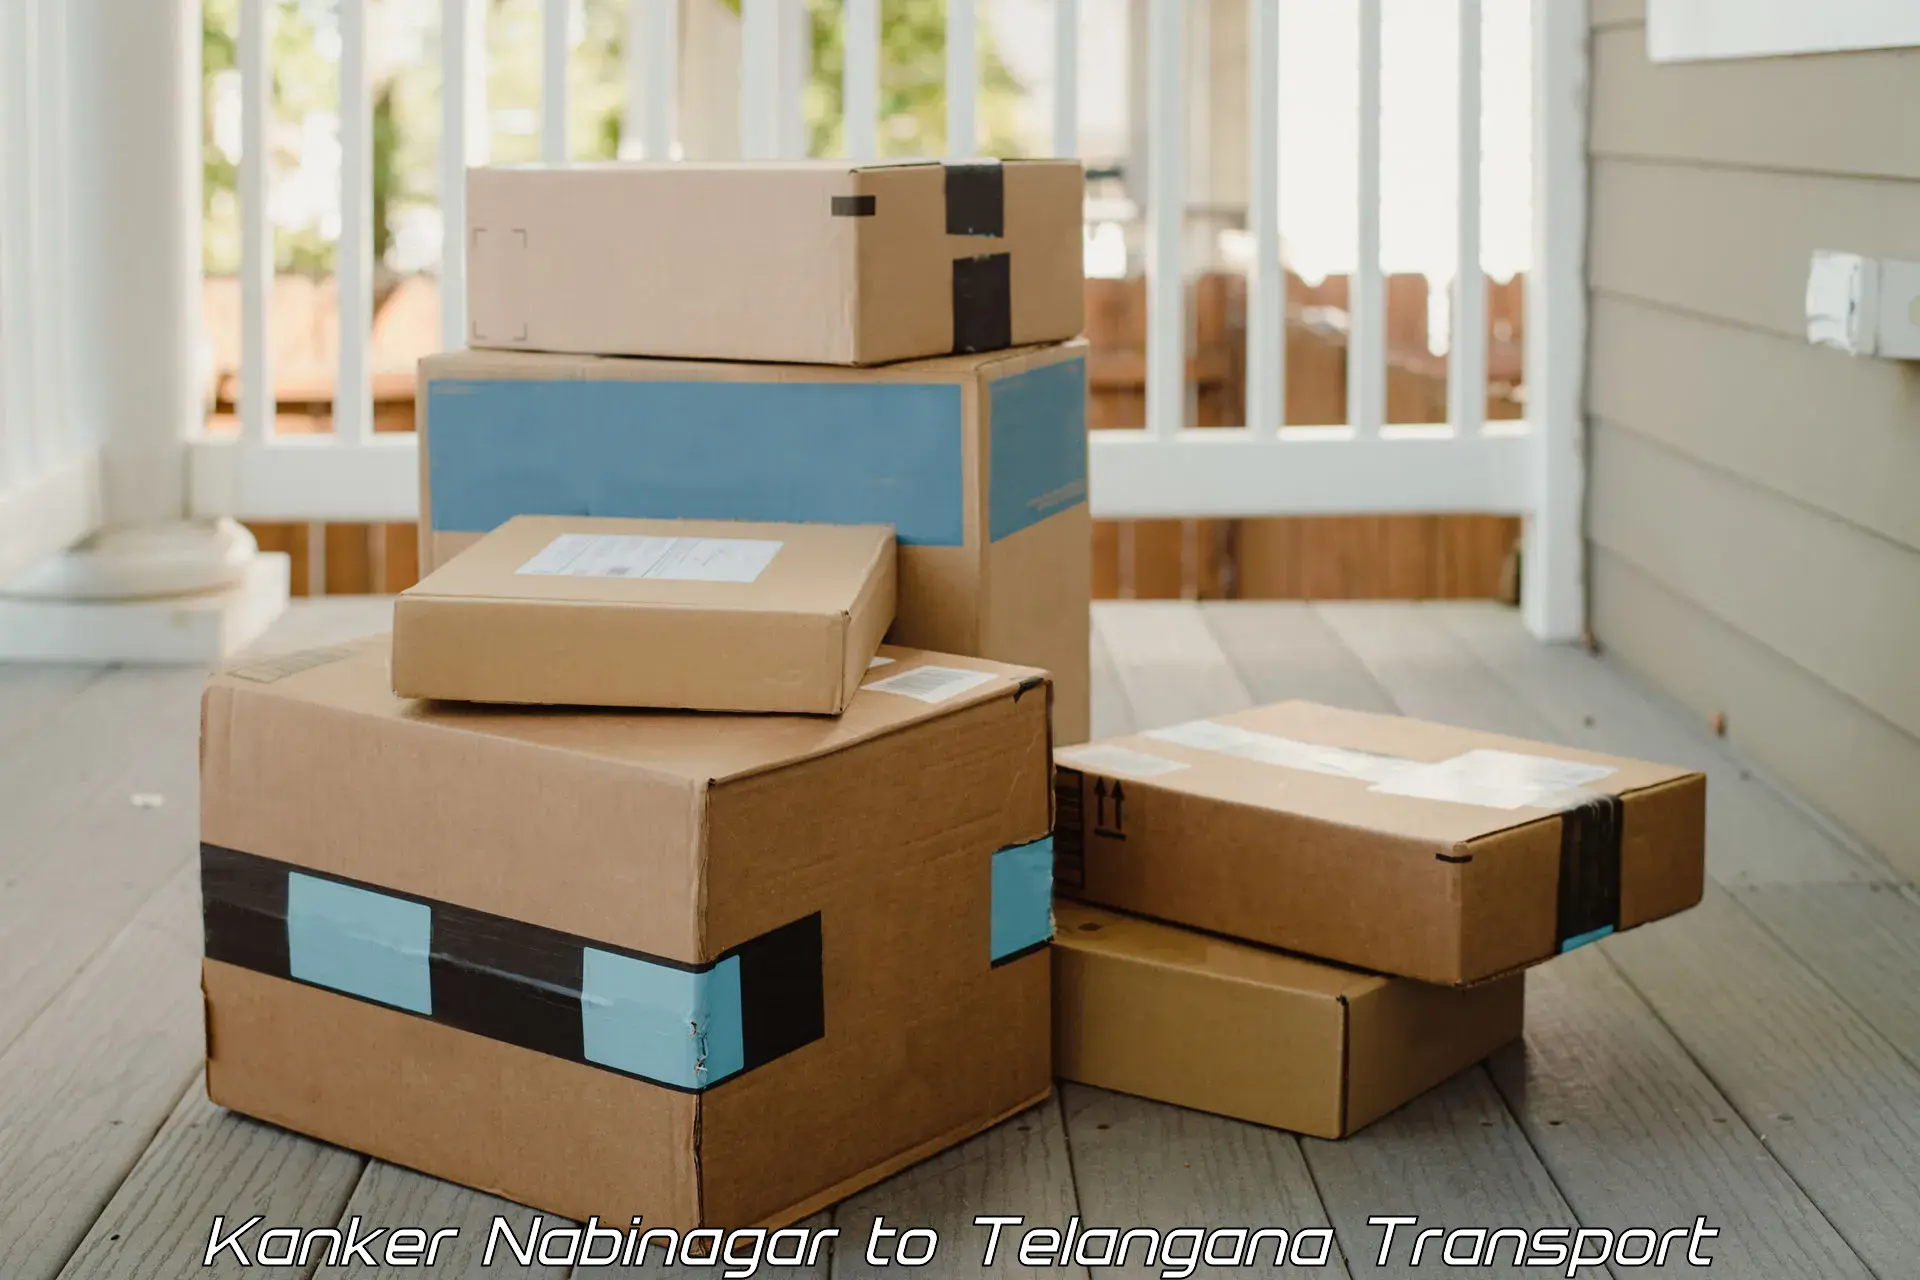 Luggage transport services Kanker Nabinagar to Gangadhara